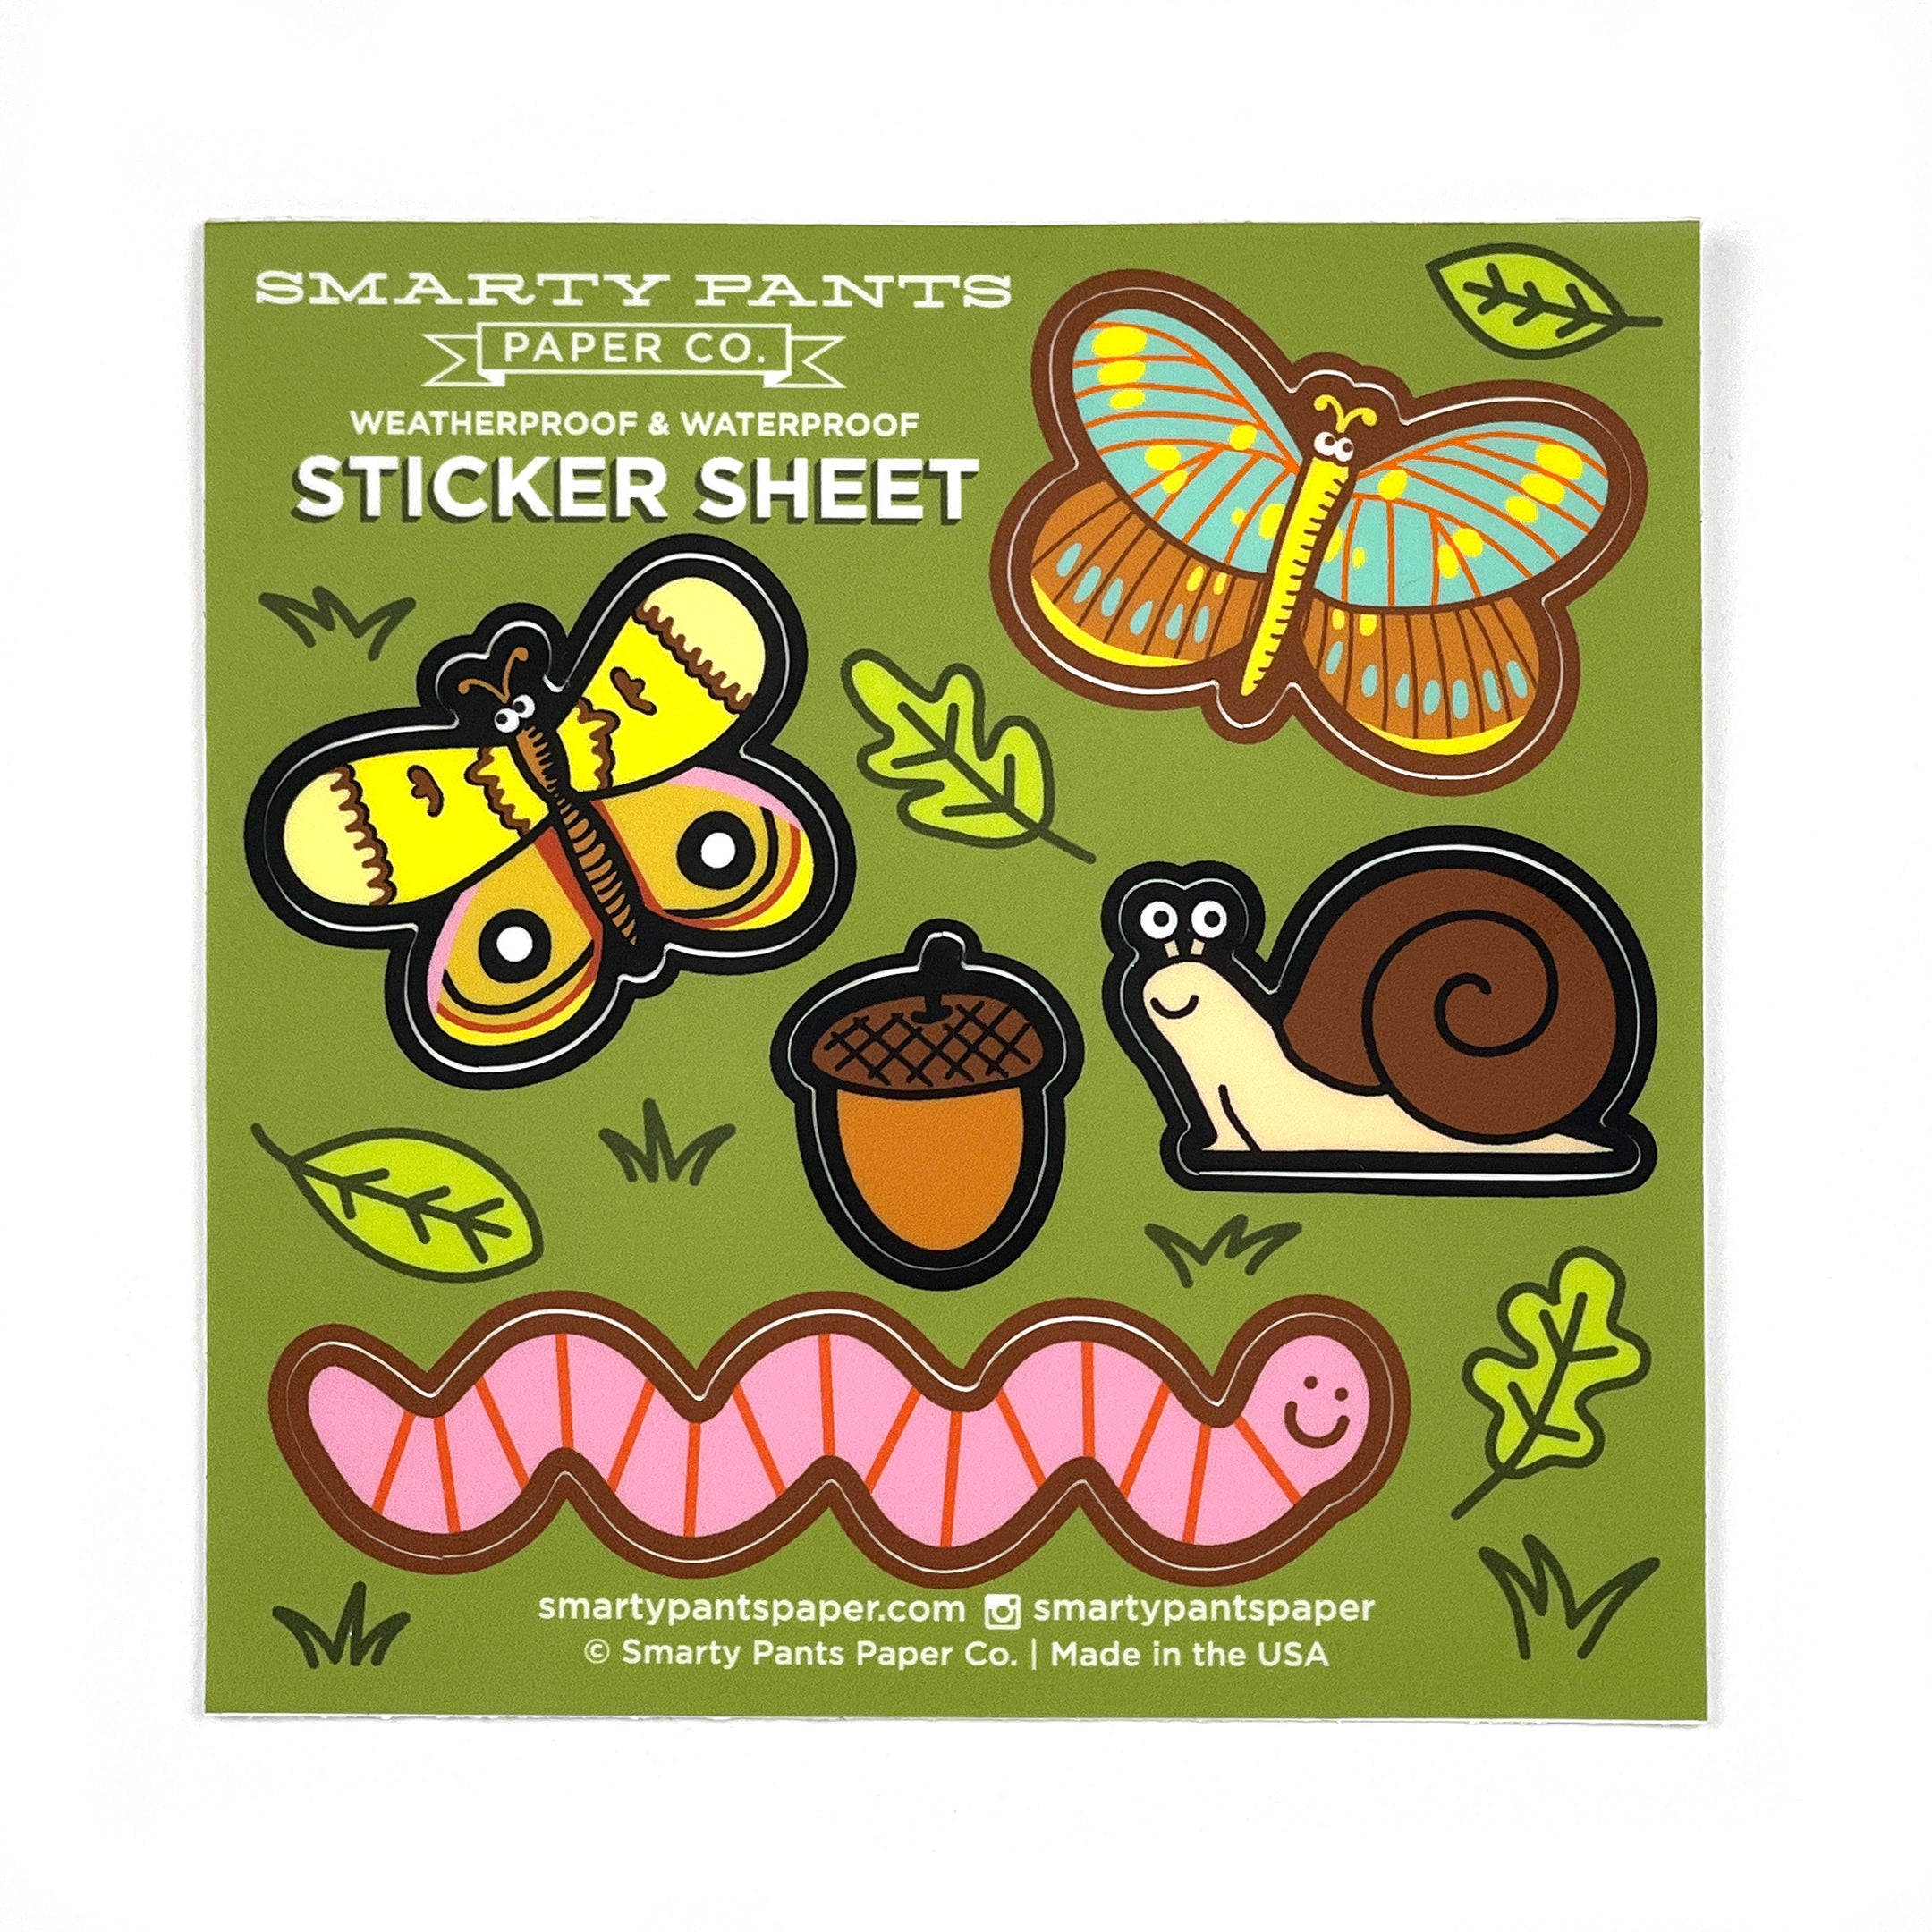 Small Friends sticker sheet